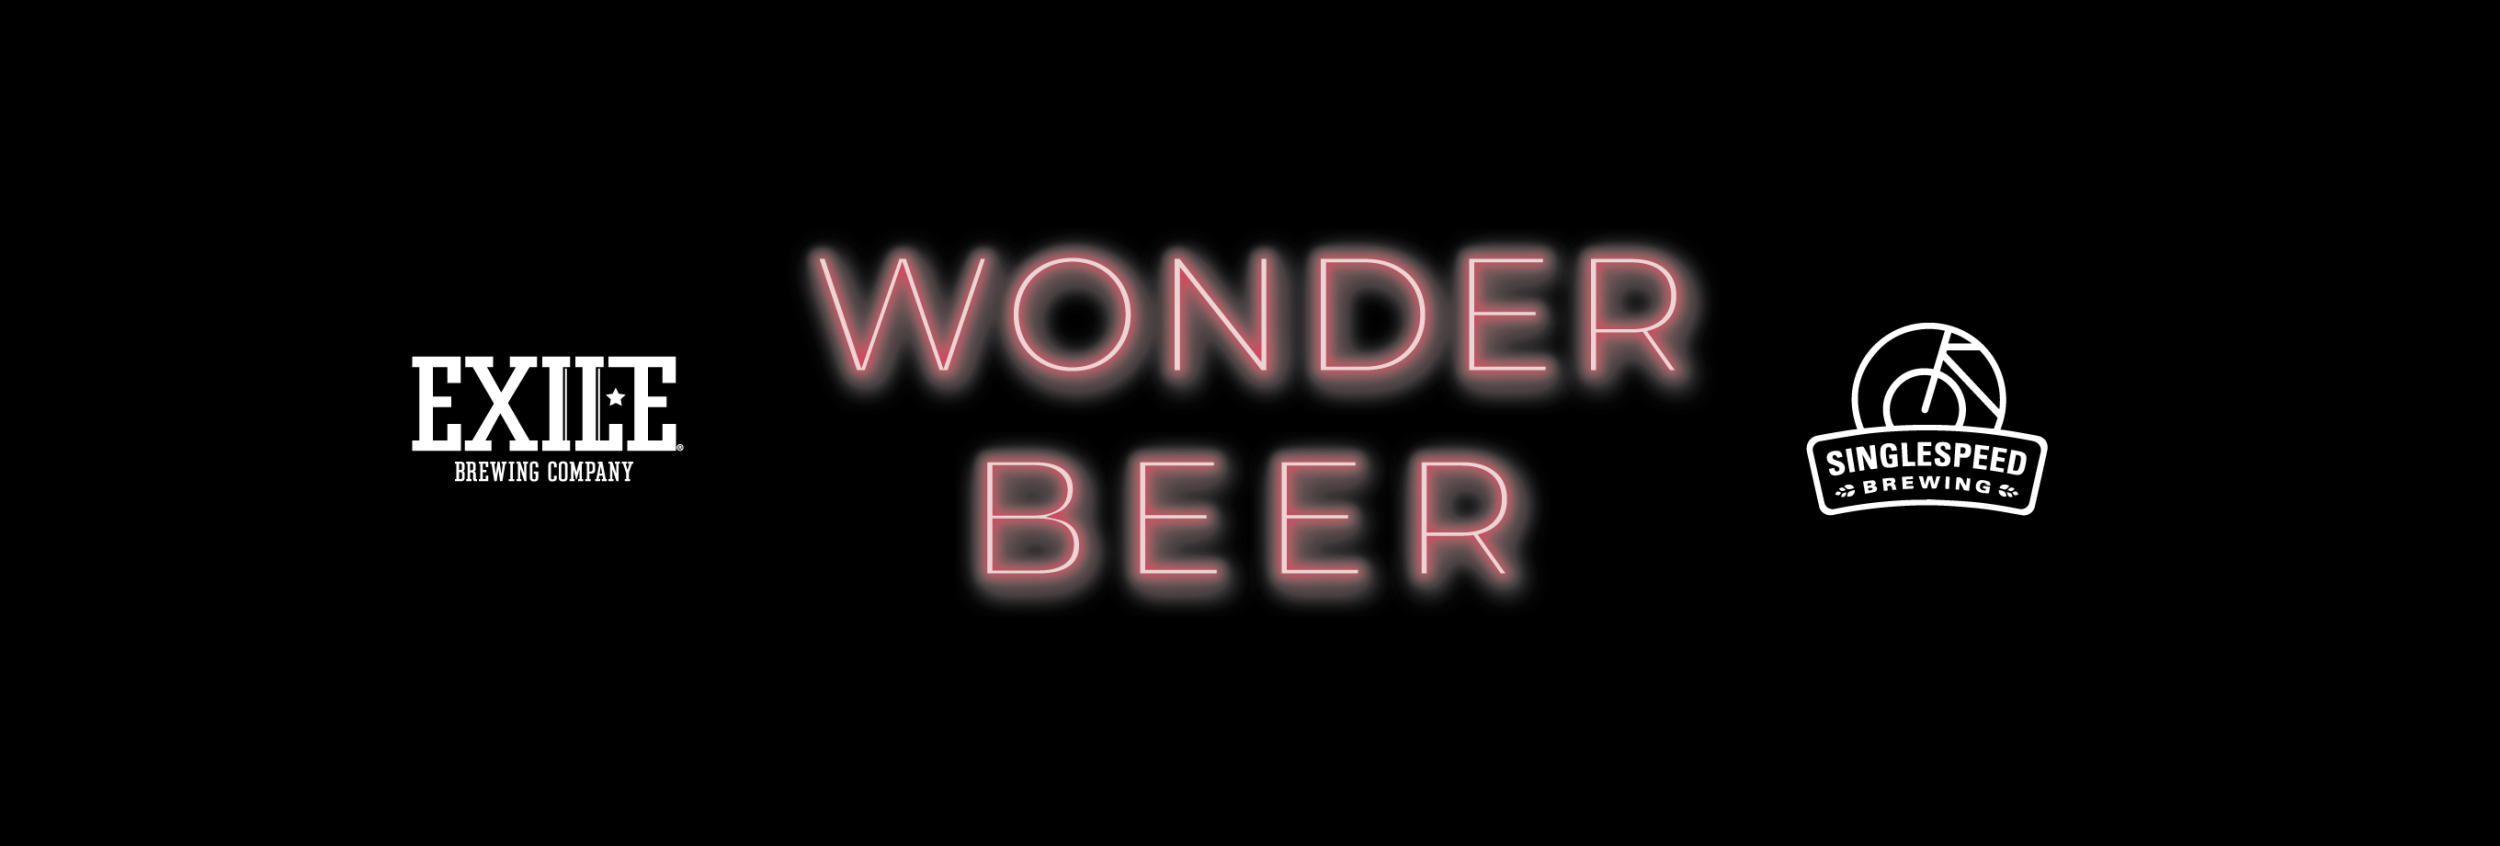 Wonder Beer